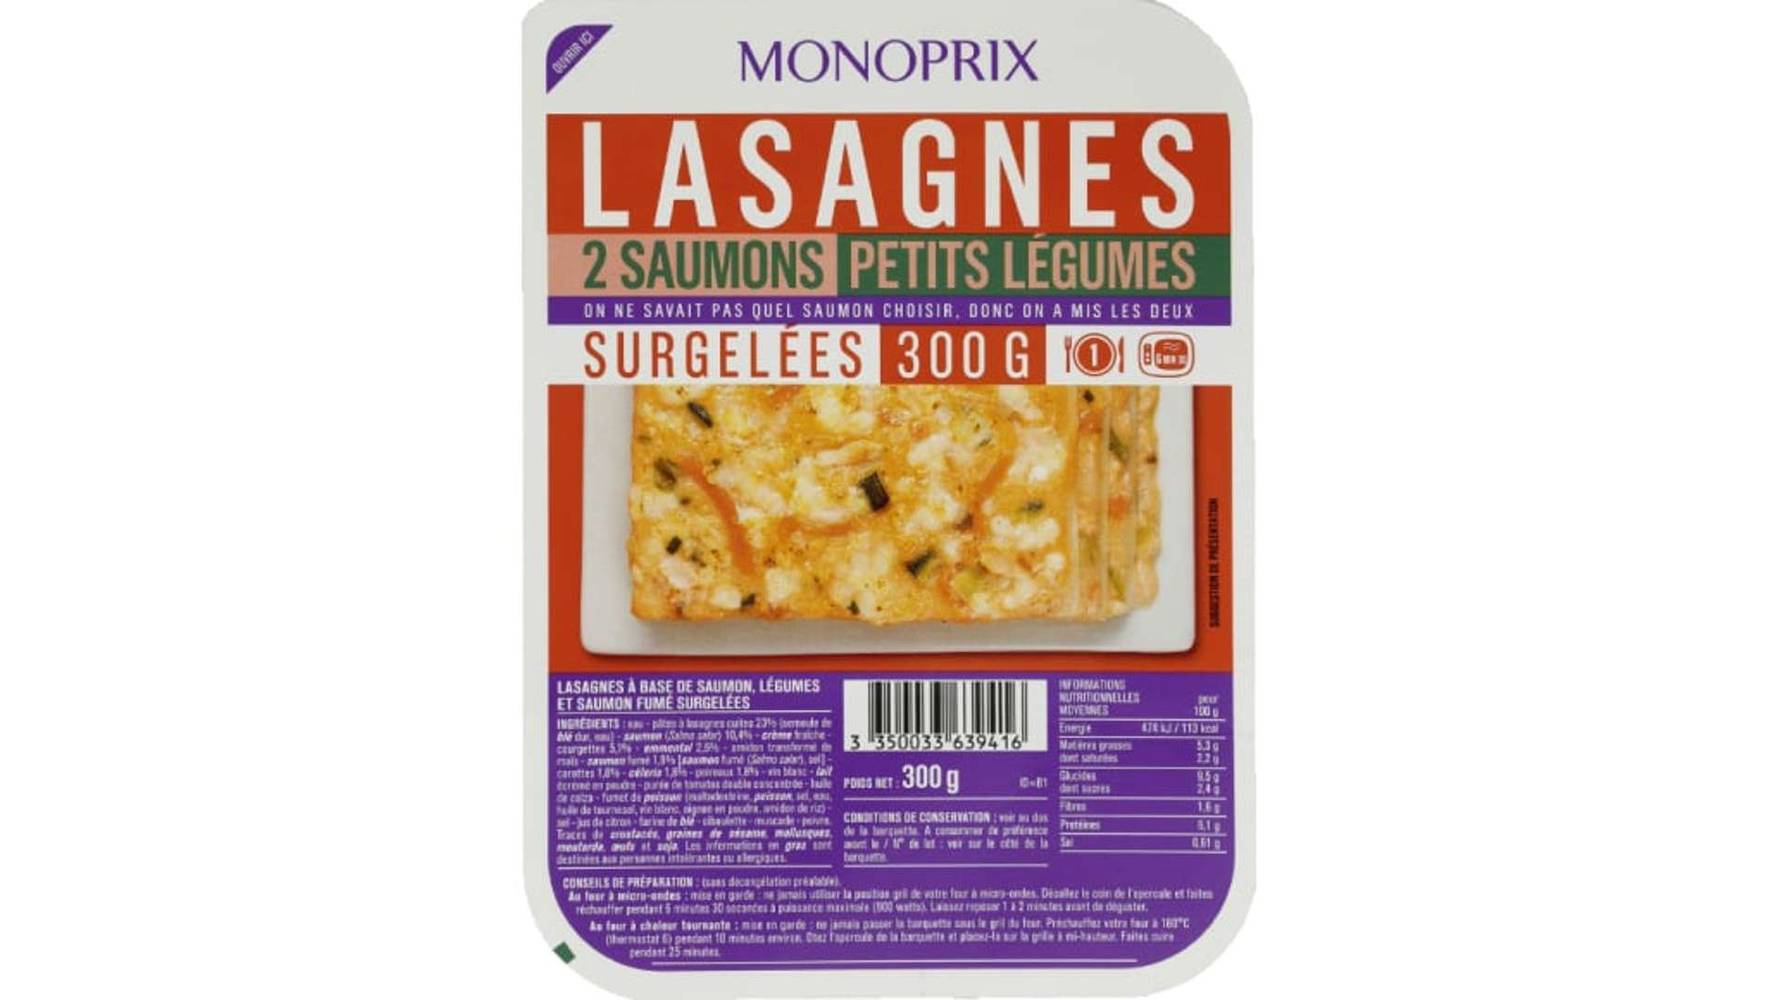 Monoprix - Lasagnes 2 saumons petits légumes